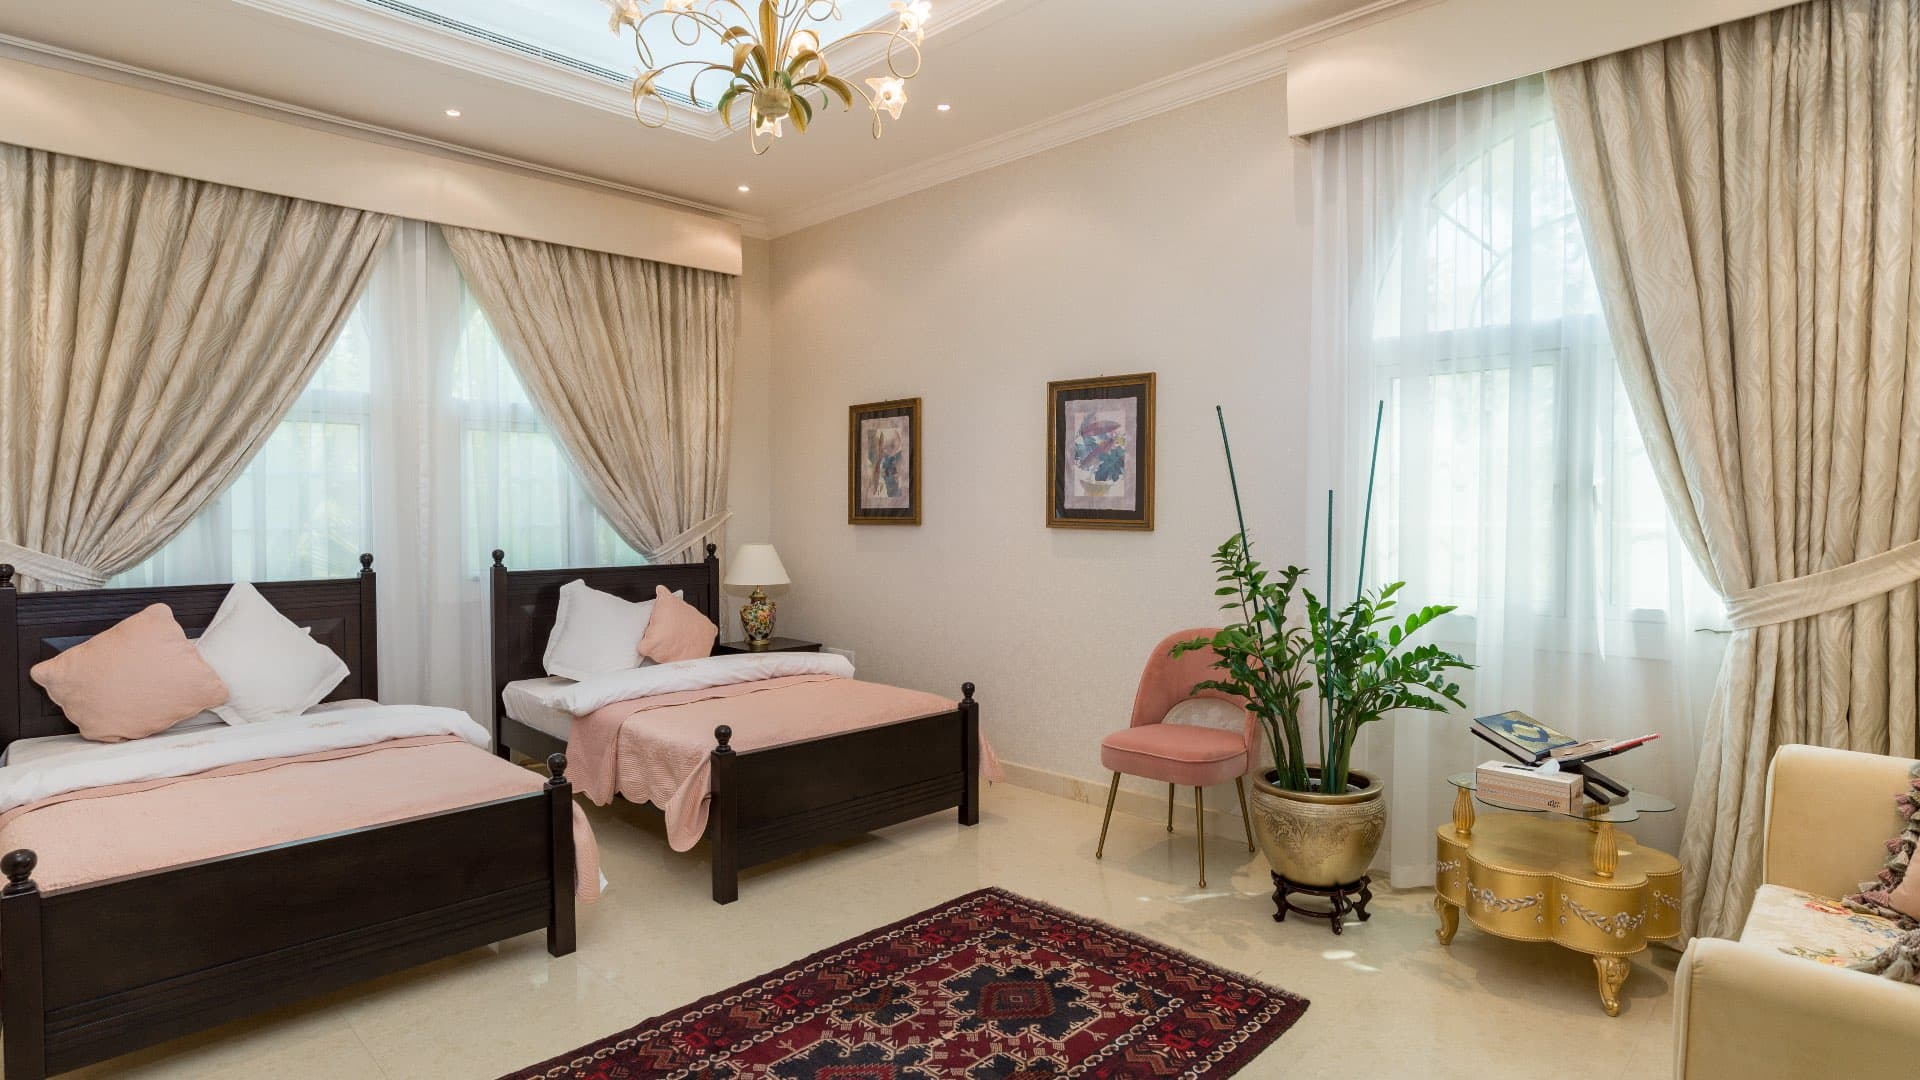 7 Bedroom Villa For Rent Al Barsha 3 Lp08020 45cf5e3d5271280.jpg